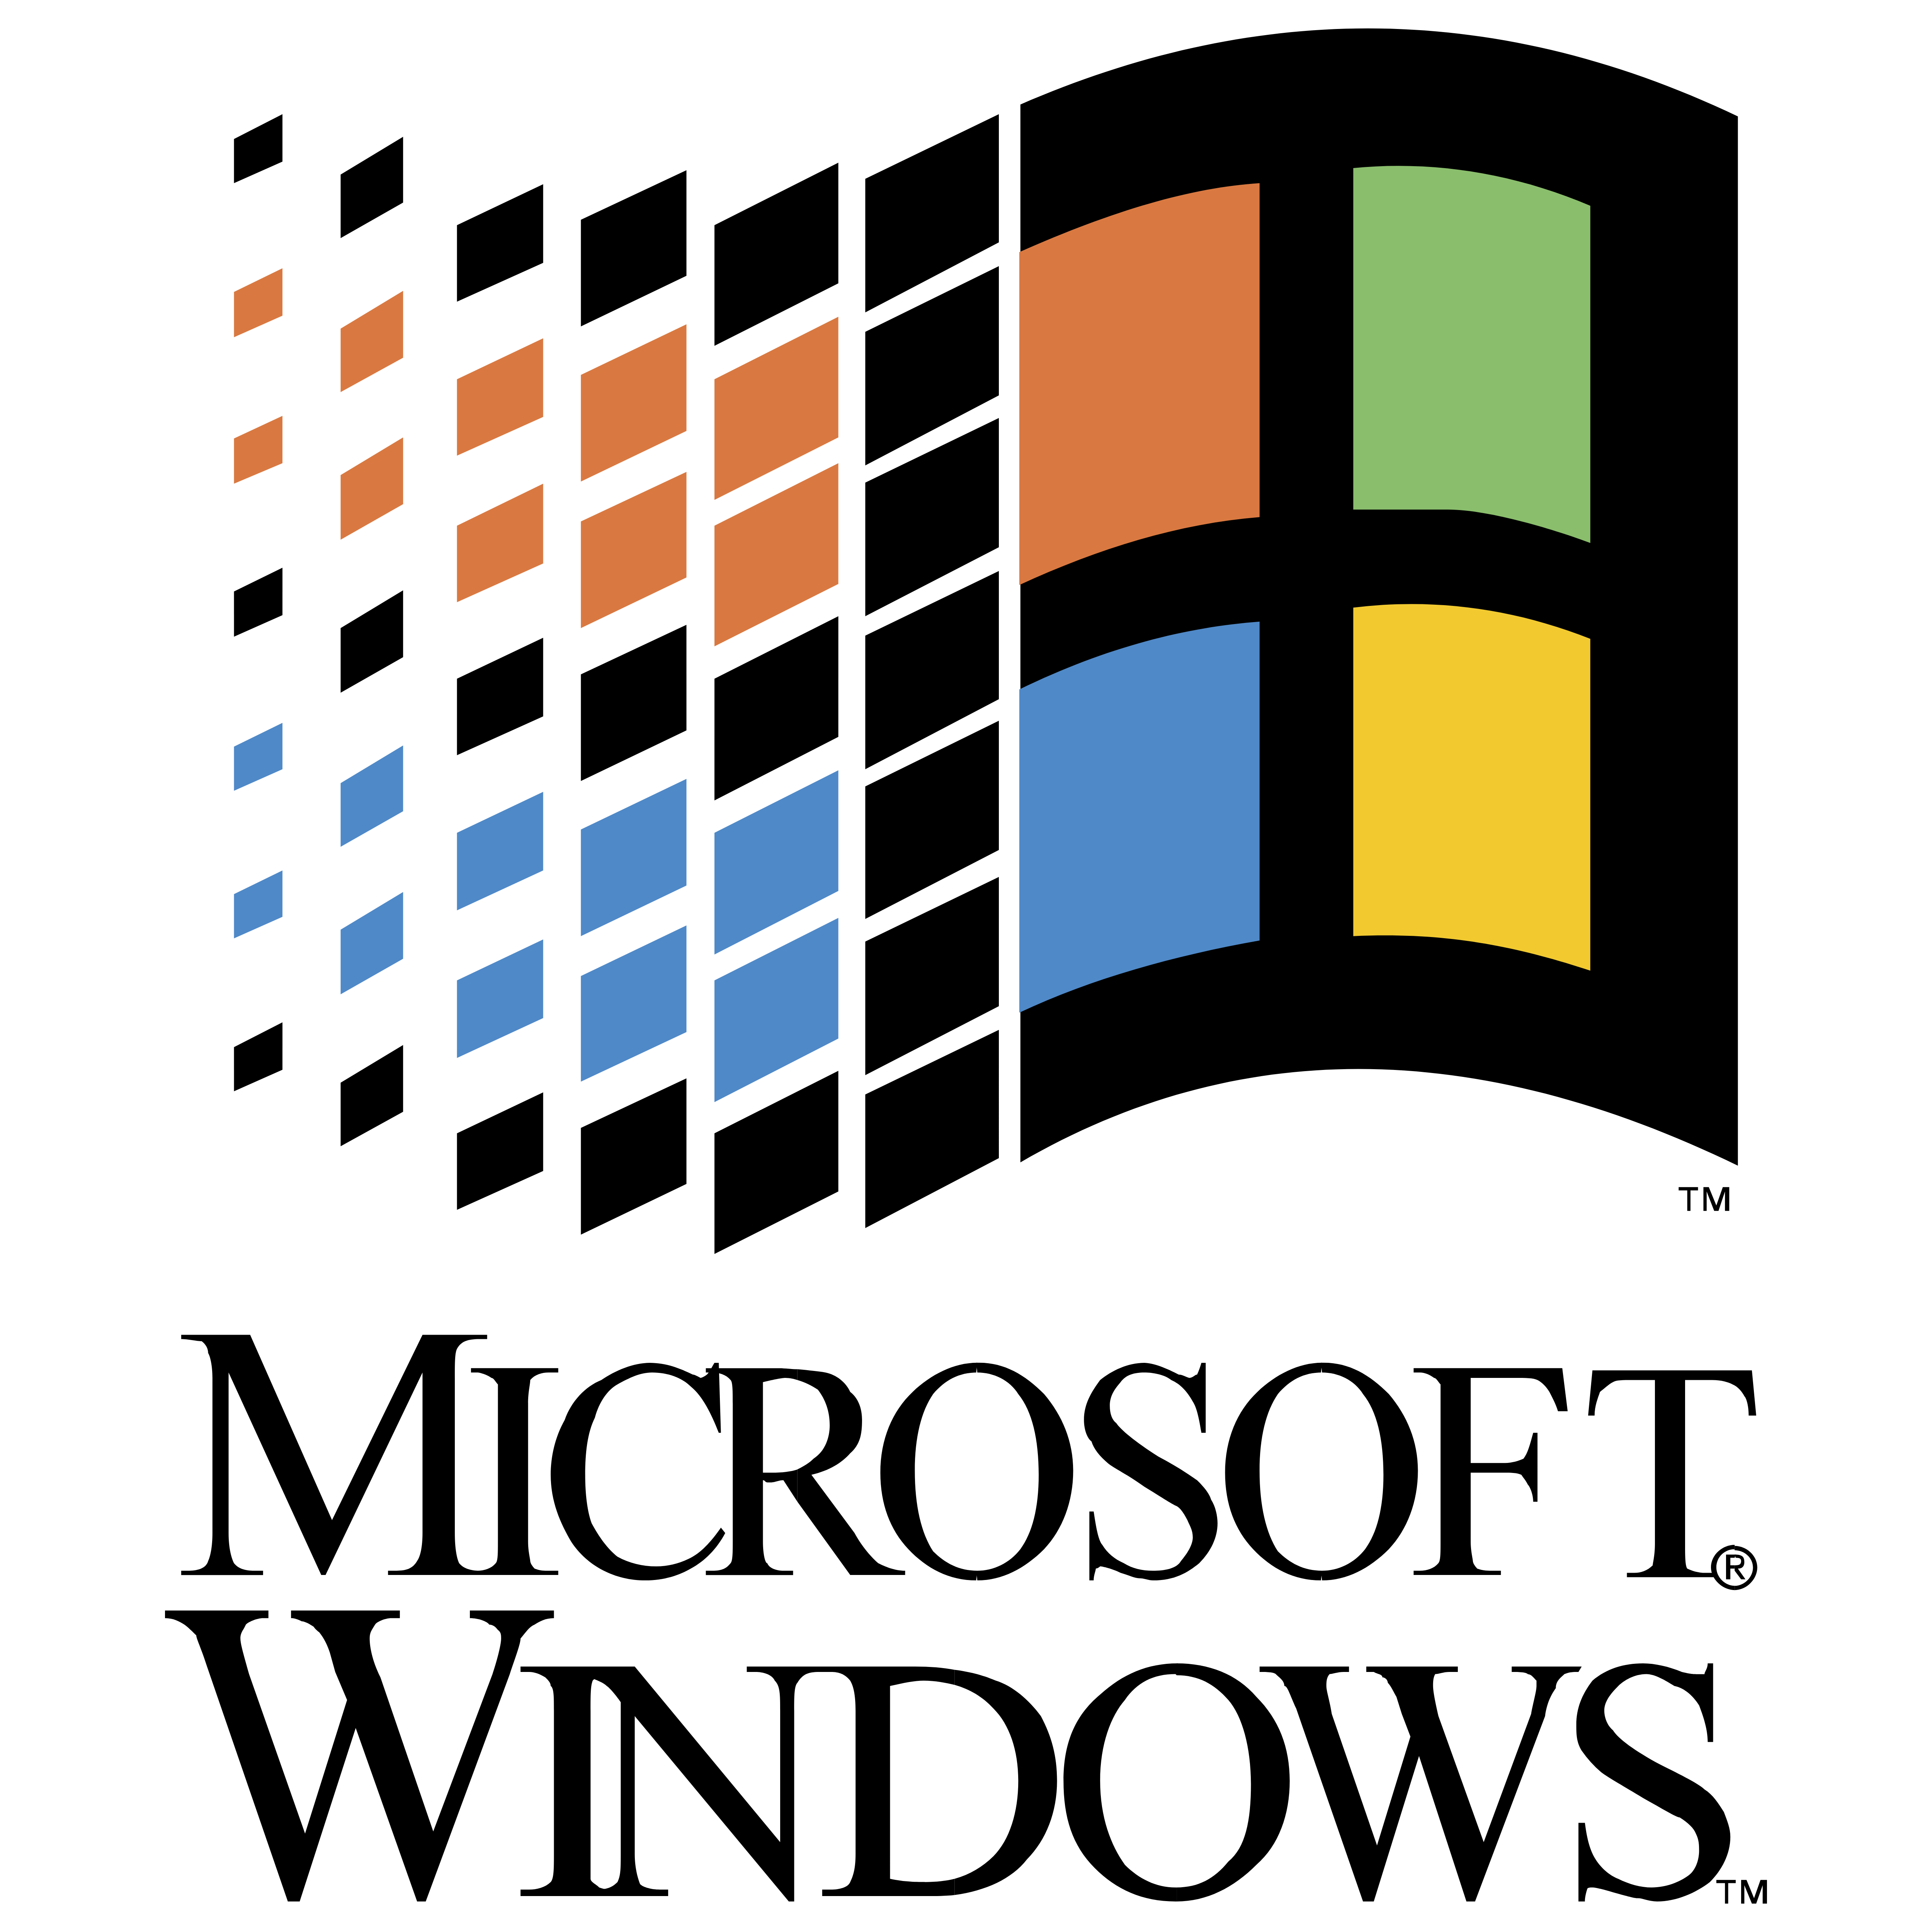 Tải về microsoft windows logo download và sử dụng miễn phí